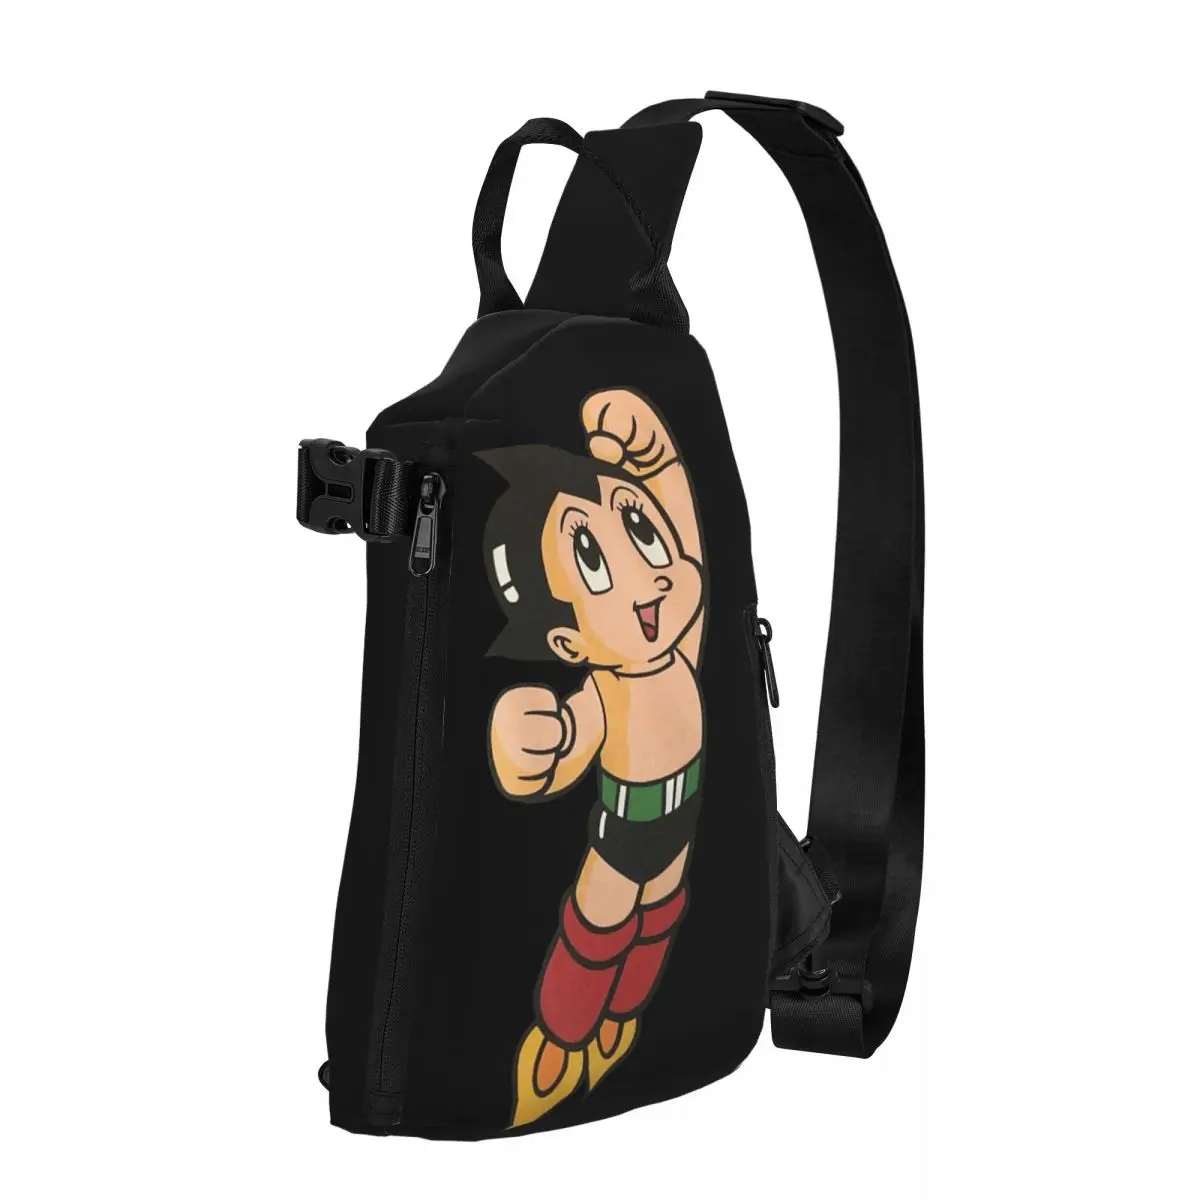 Astro Boy Shoulder Bags Chest Cross Chest Bag Diagonally Casual Messenger Bag Travel Handbag